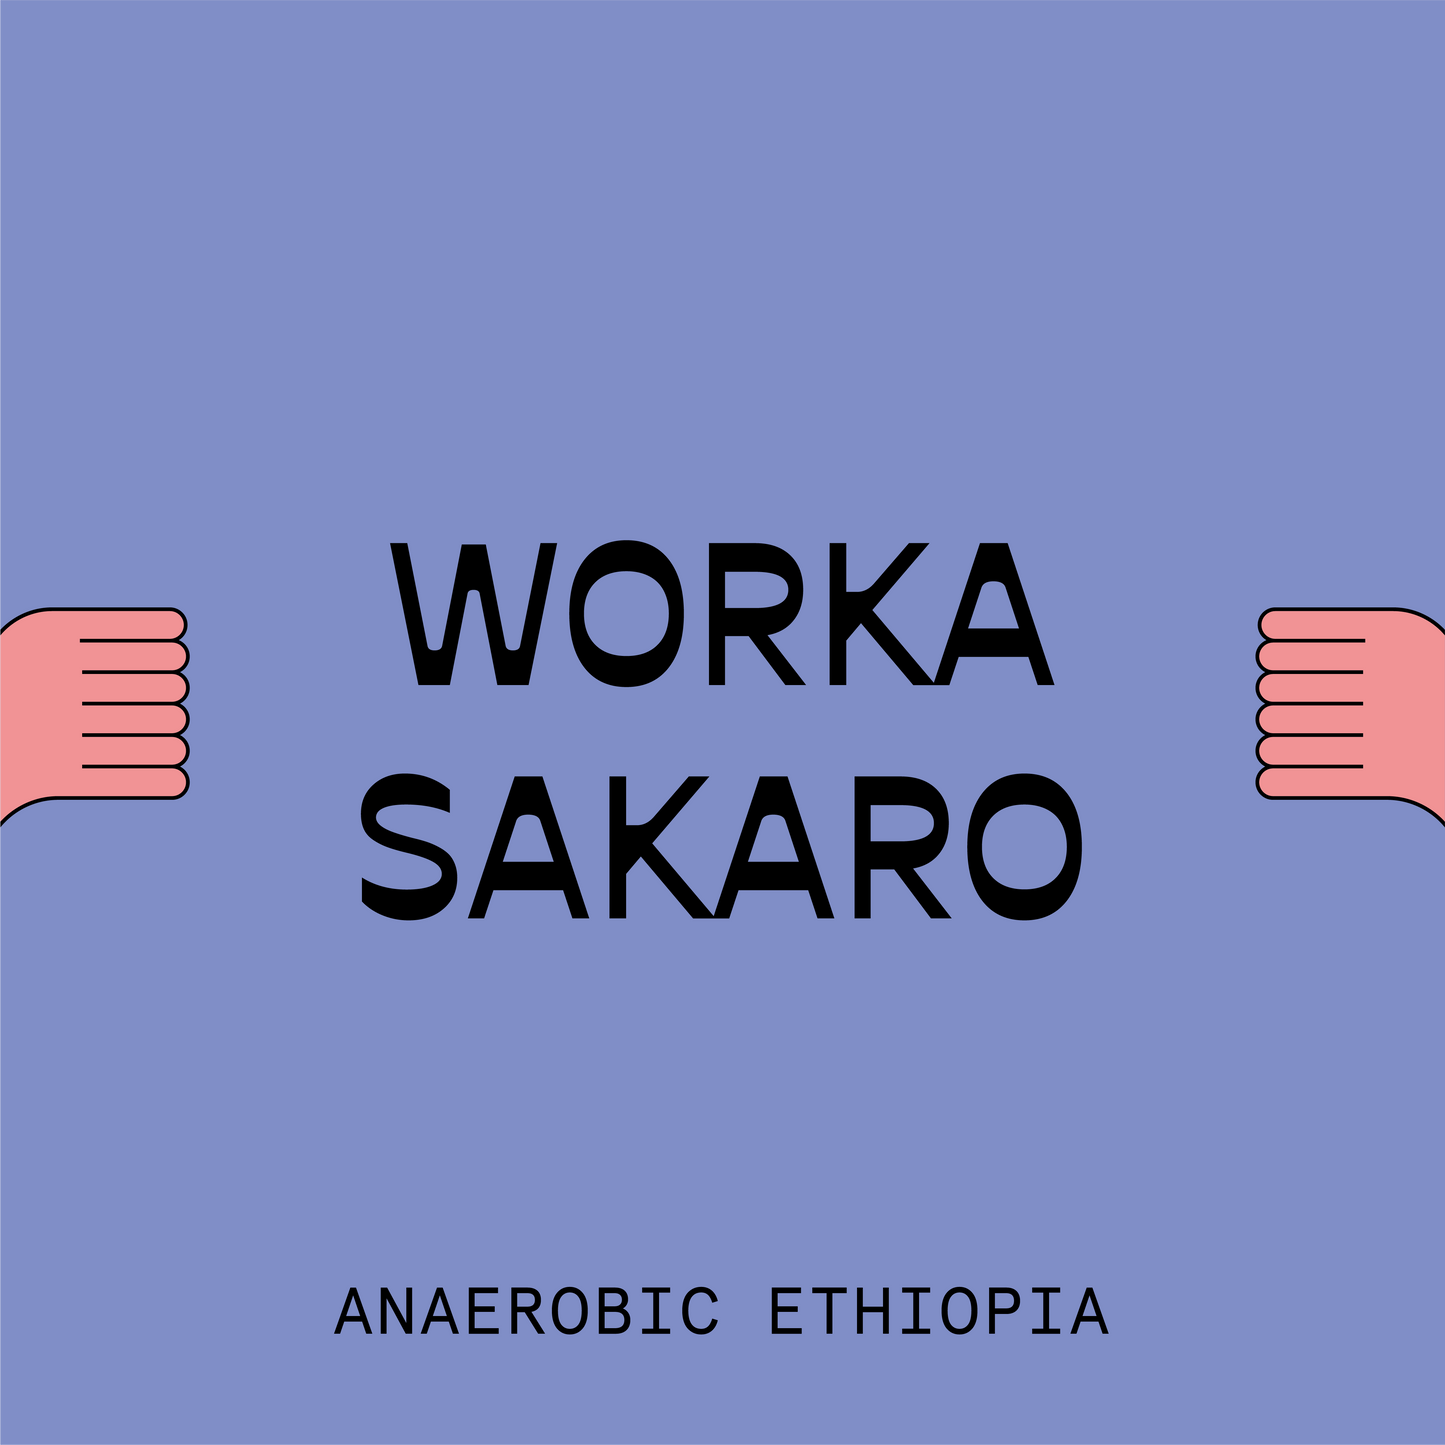 Ethiopia Worka Sakaro Anaerobic